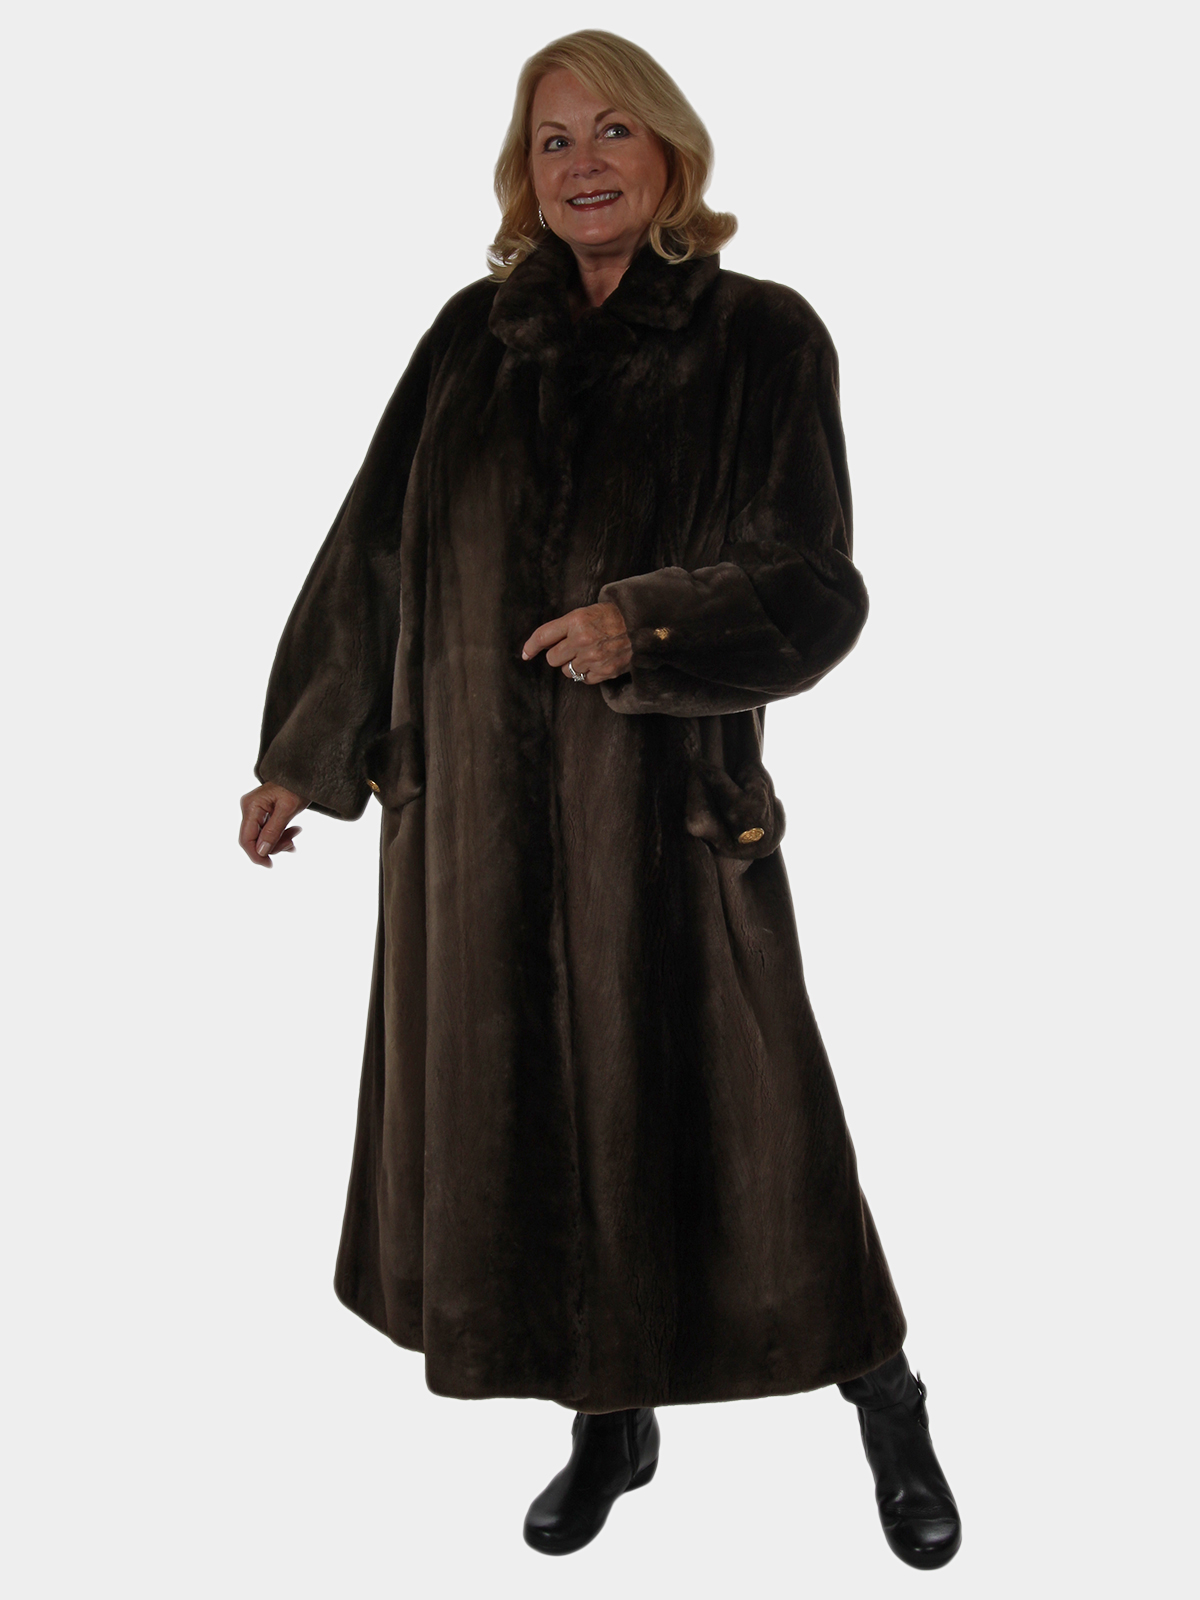 Louis Feraud Woman's Phantom Sheared Beaver Fur Coat